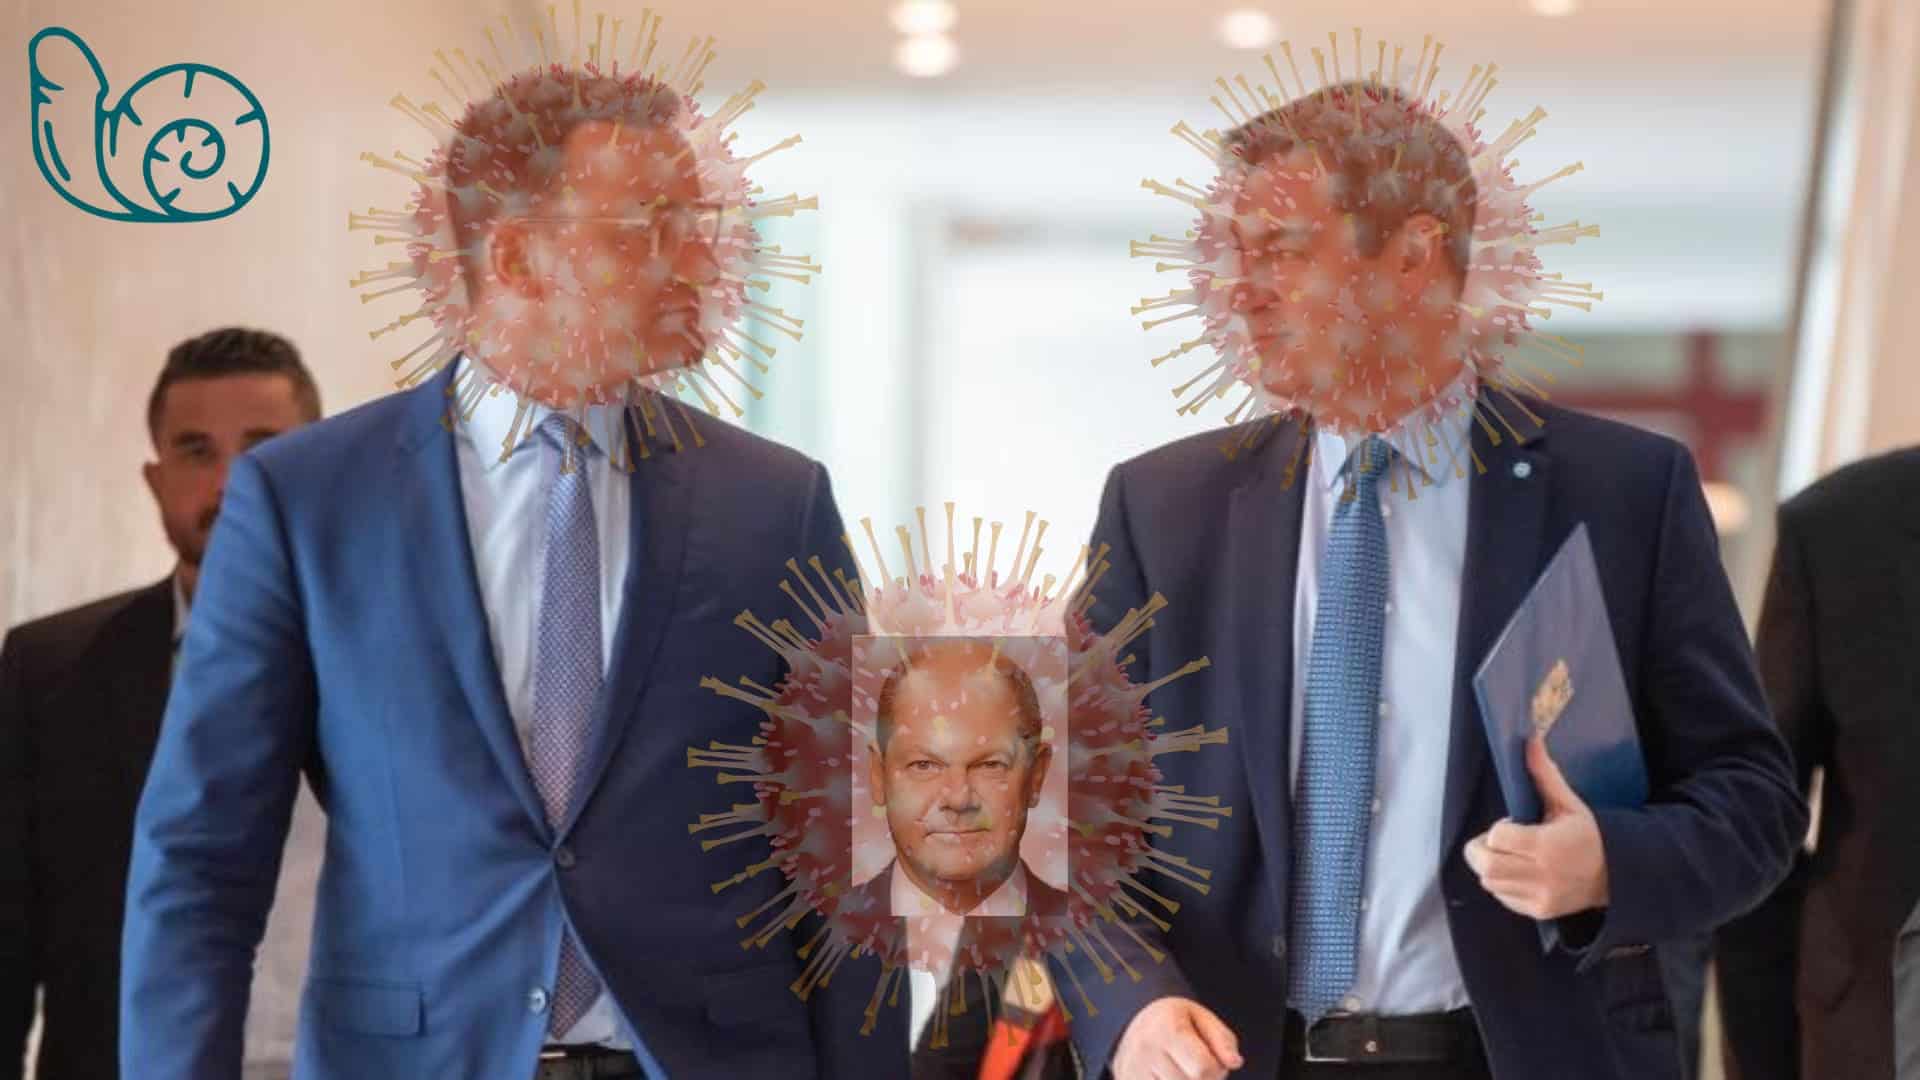 Bild für den Beitrag: Neue Corona-Varianten werden nach Politikern benannt